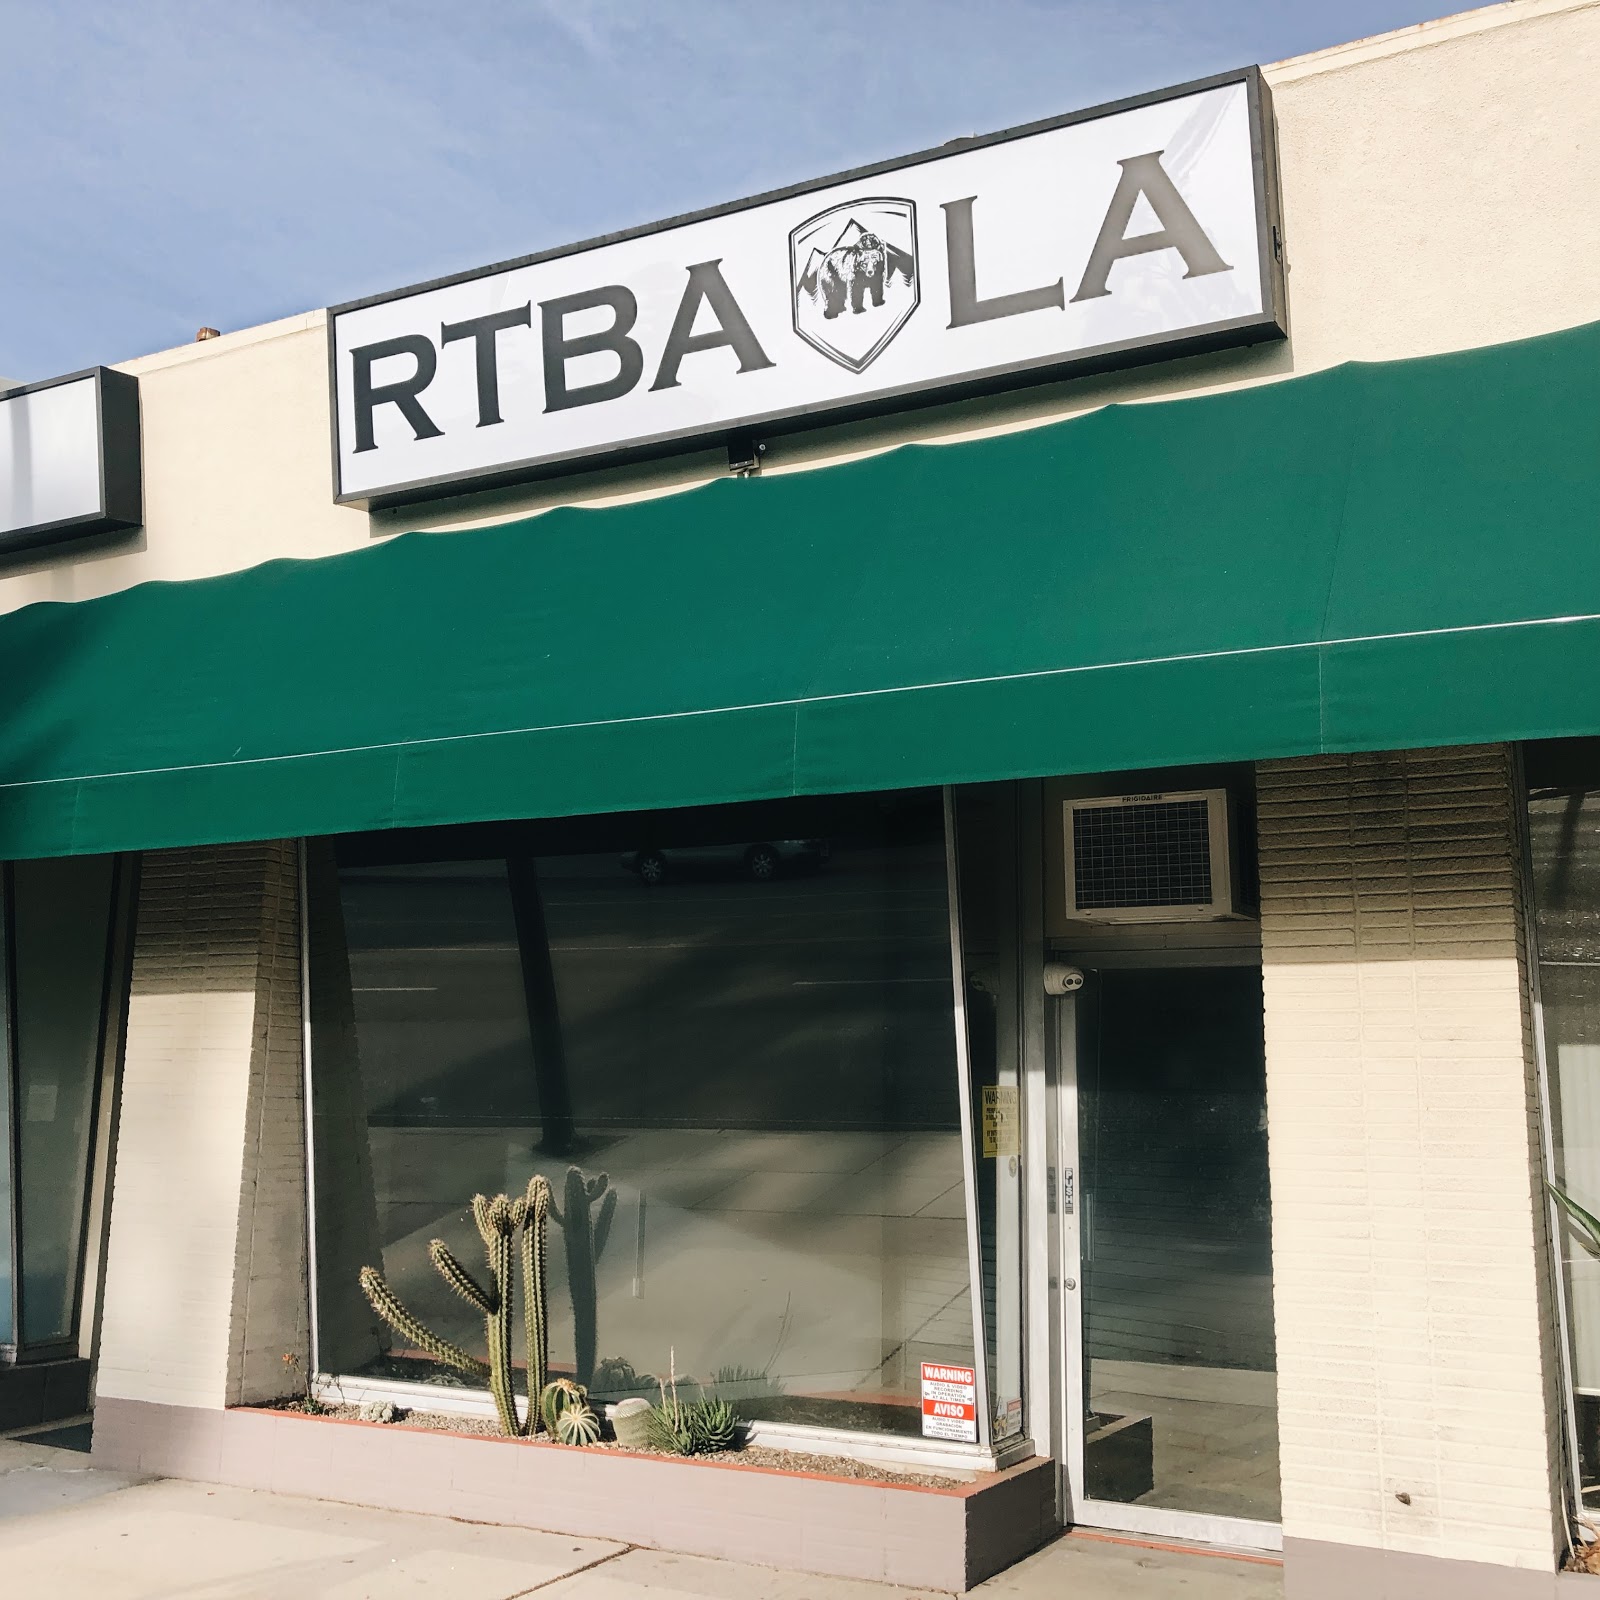 Member RTBA LA in Burbank CA